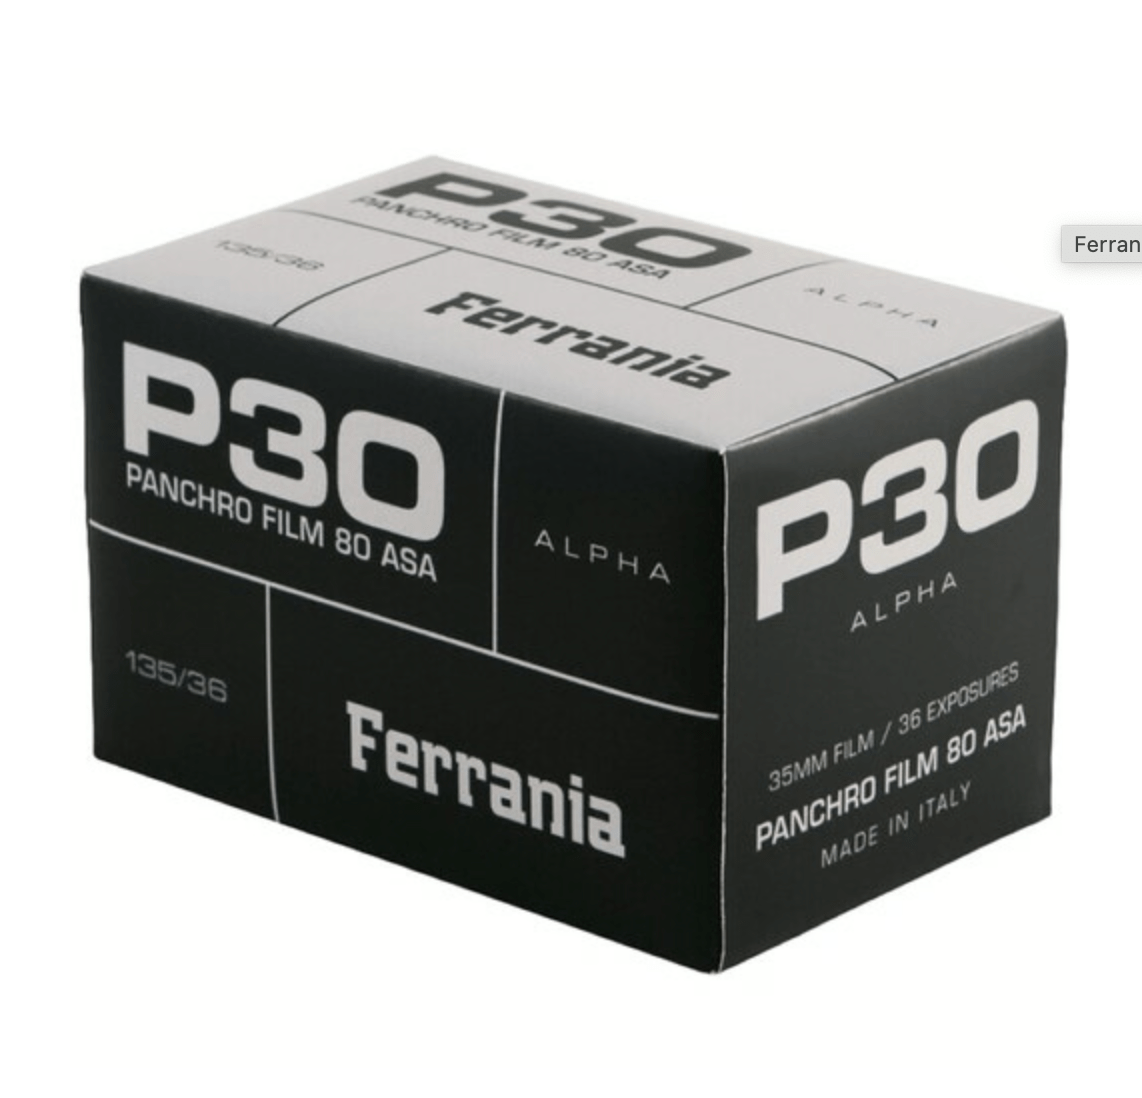 Ferrania P30 80 ISO Film (35mm Roll Film, 36 Exposures) - B&C Camera